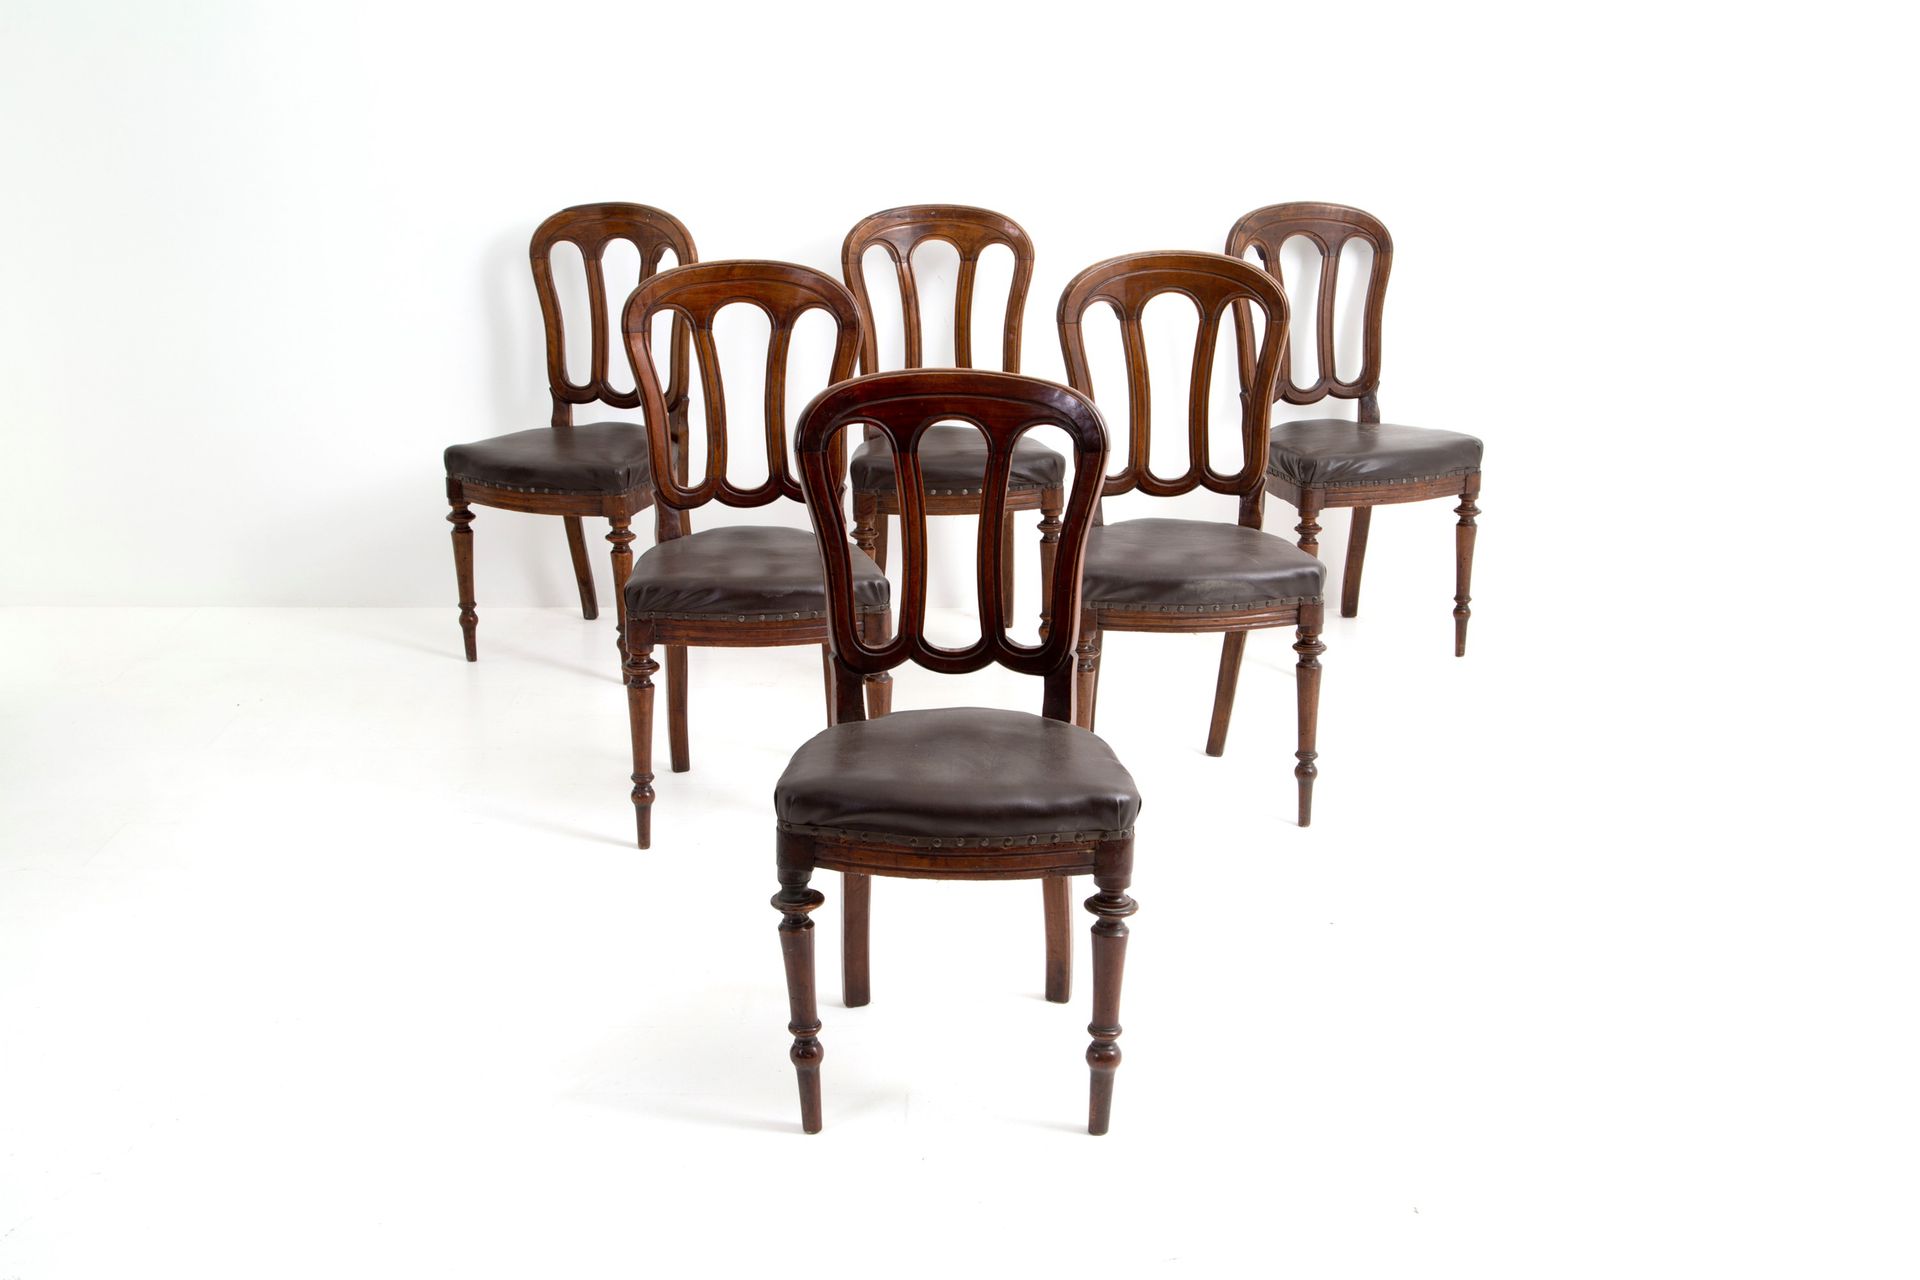 Six chairs 本拍品由六把米兰式胡桃木椅子组成。19世纪。95x44x45厘米约。